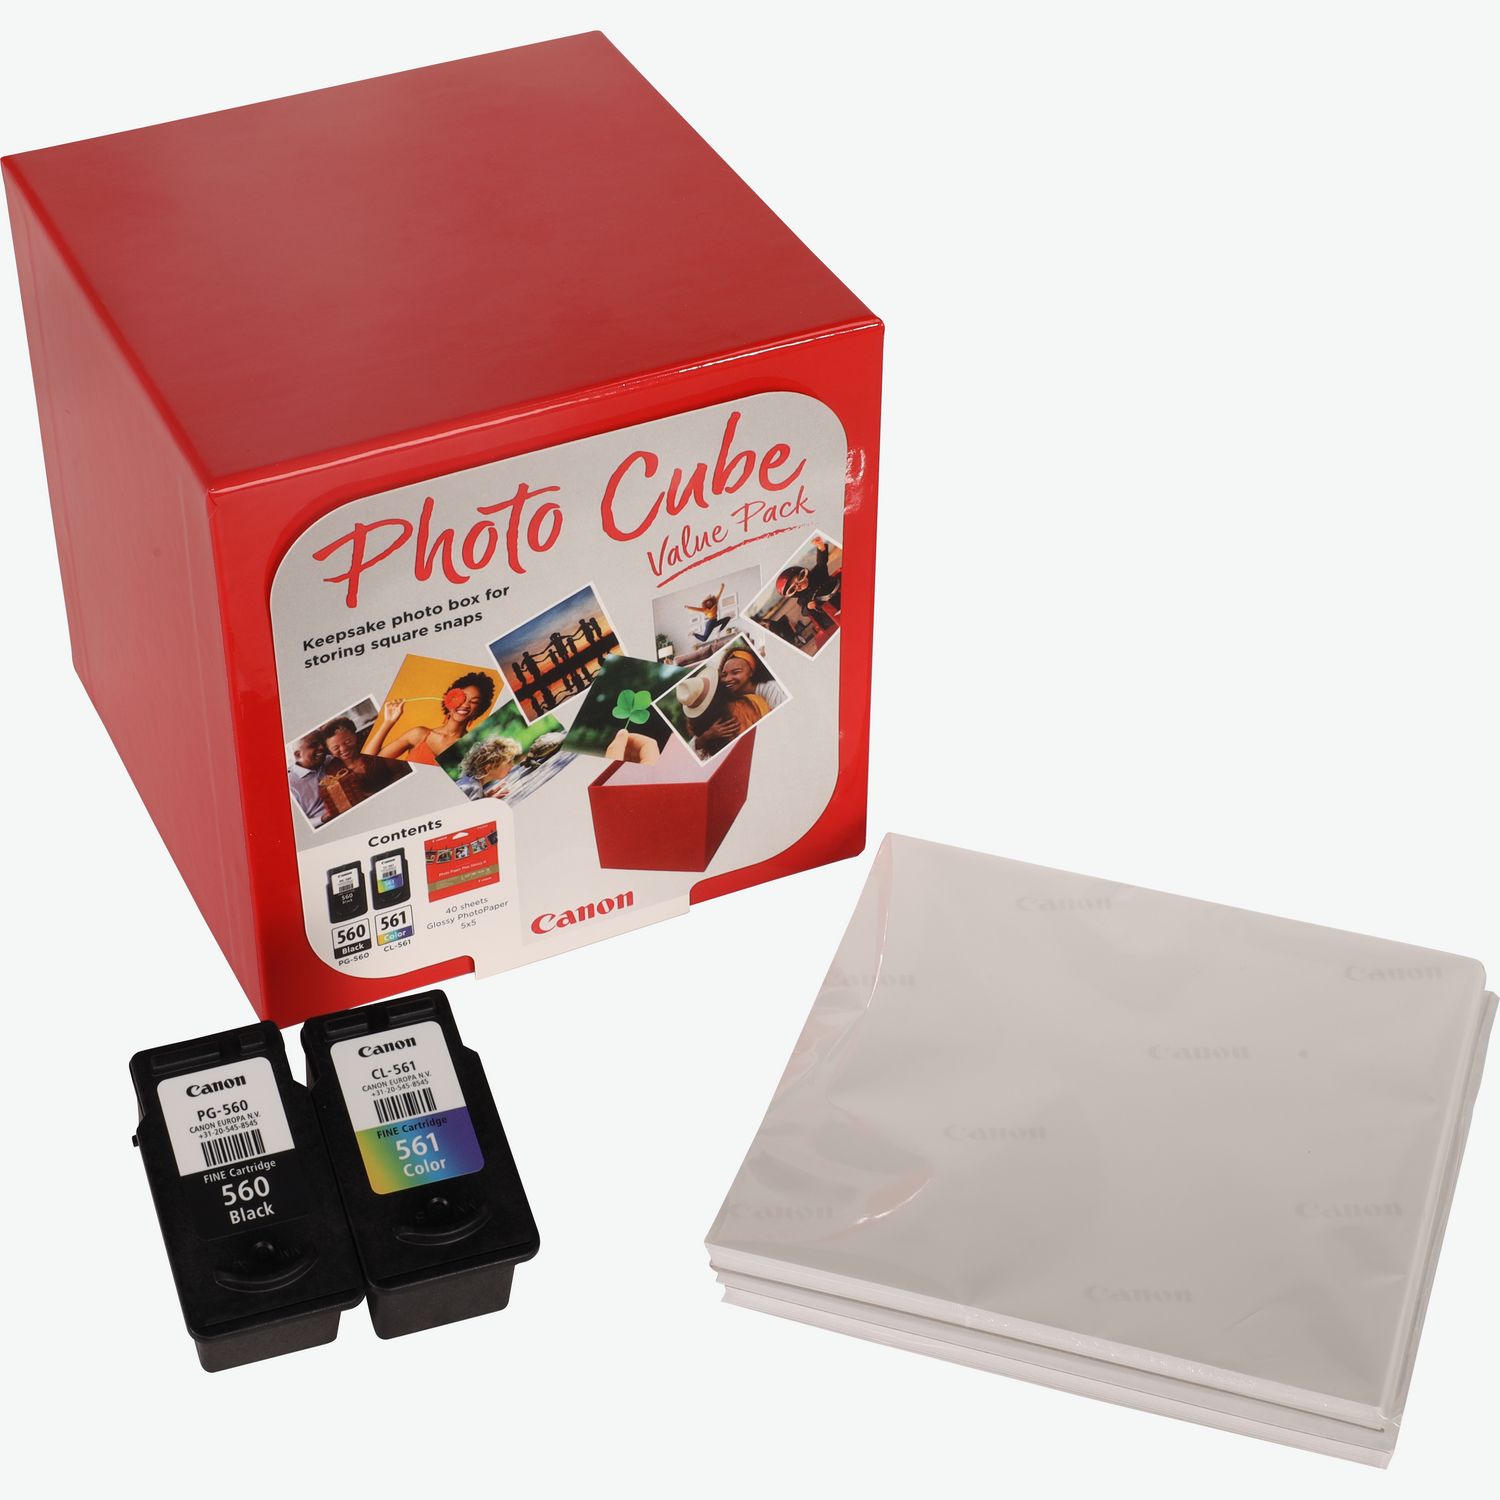 Coffret Canon Photo Cube incluant les cartouches d'encre PG-560